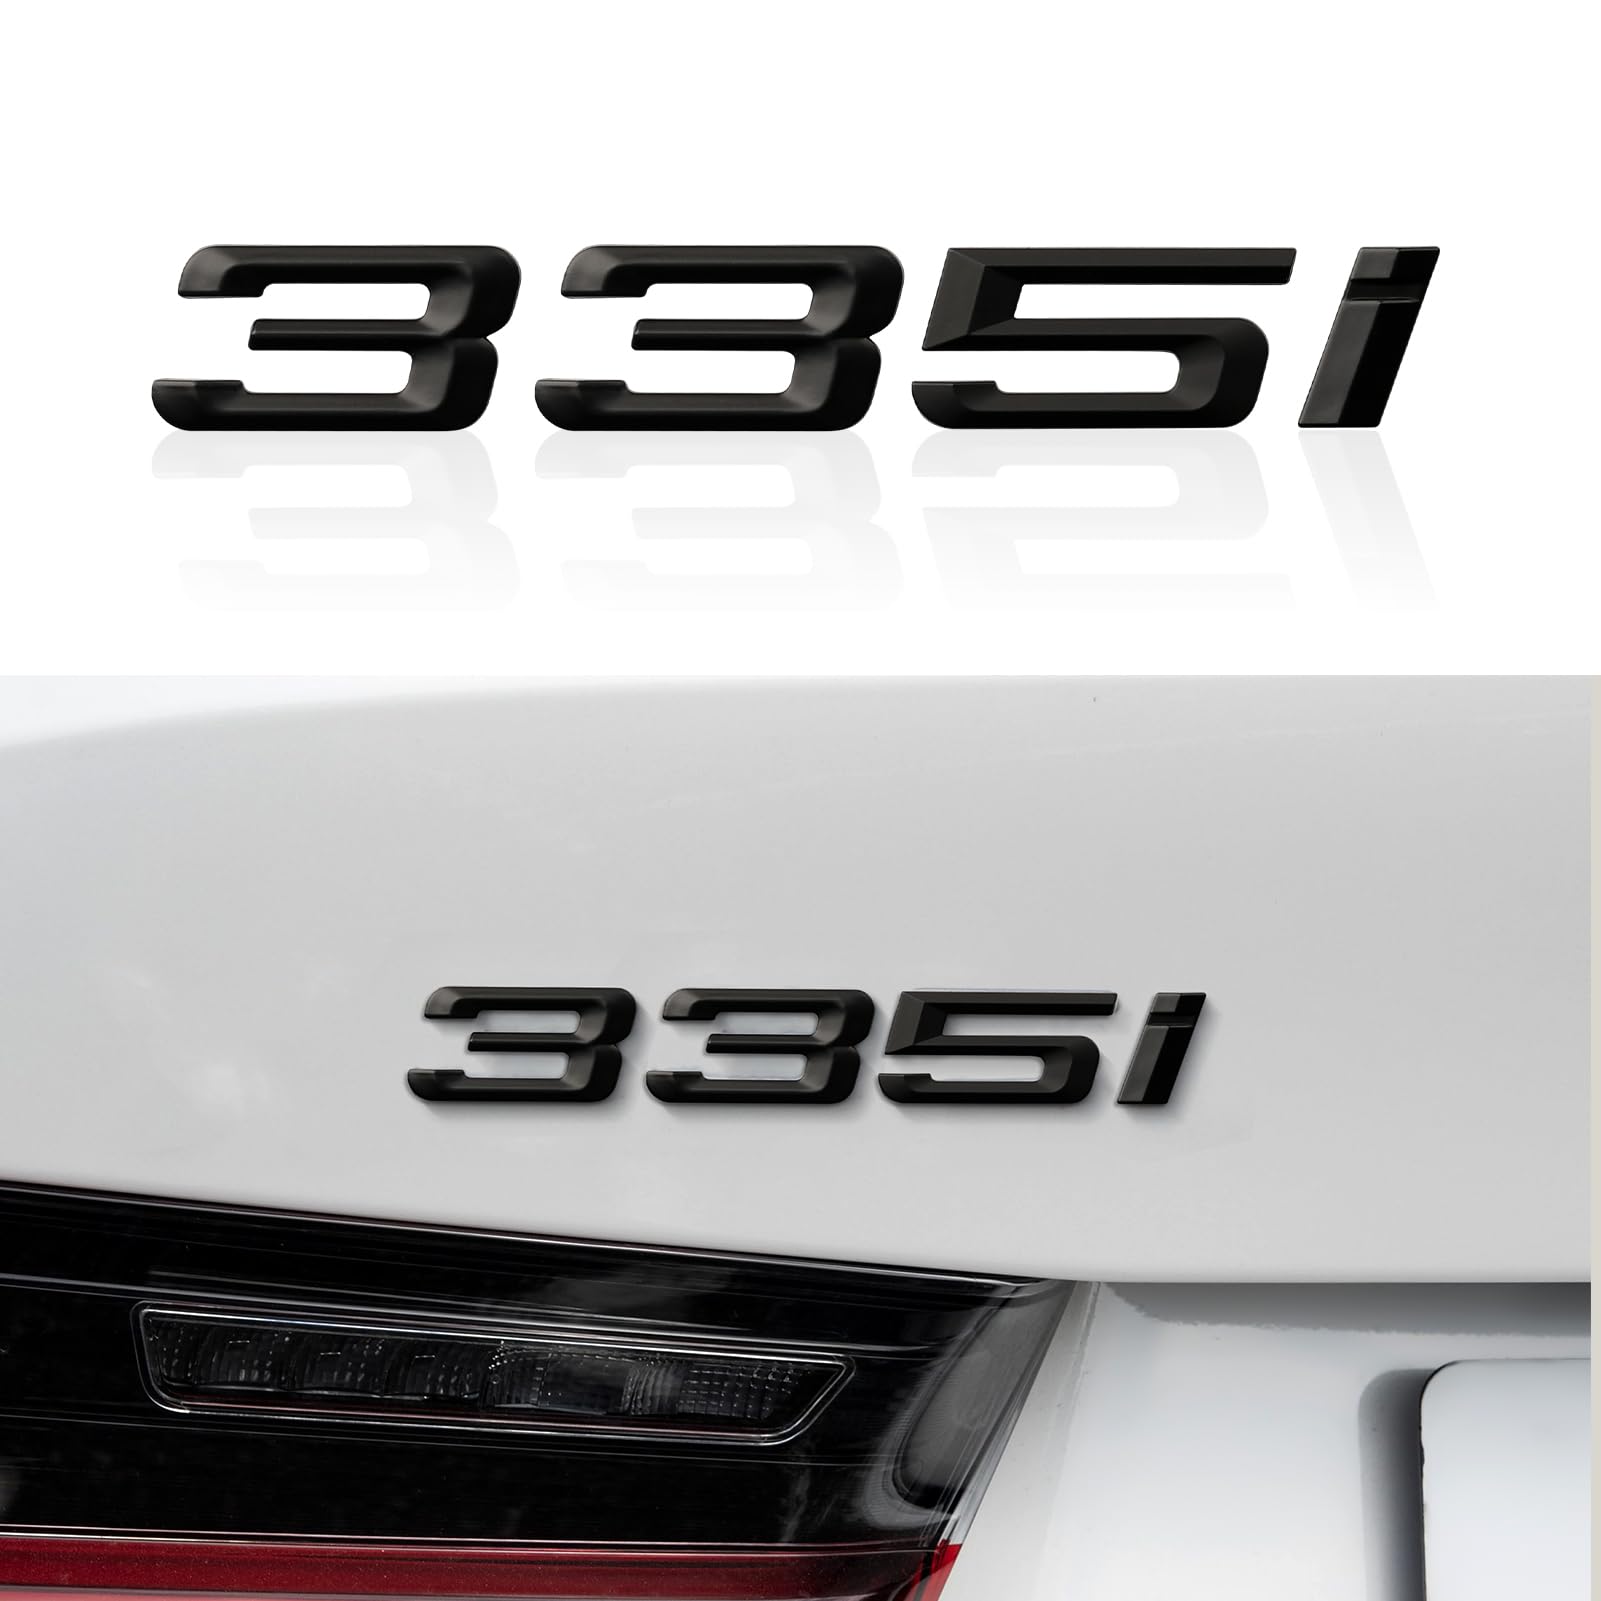 Auto Nummer Anzahl Buchstaben Wort Kofferraum Embleme ABS Abzeichen Aufkleber Brief Stamm Deckel Kompatibel mit BMW 3er 335i Dekoration Zubehör -Mattschwarz von OYDDL